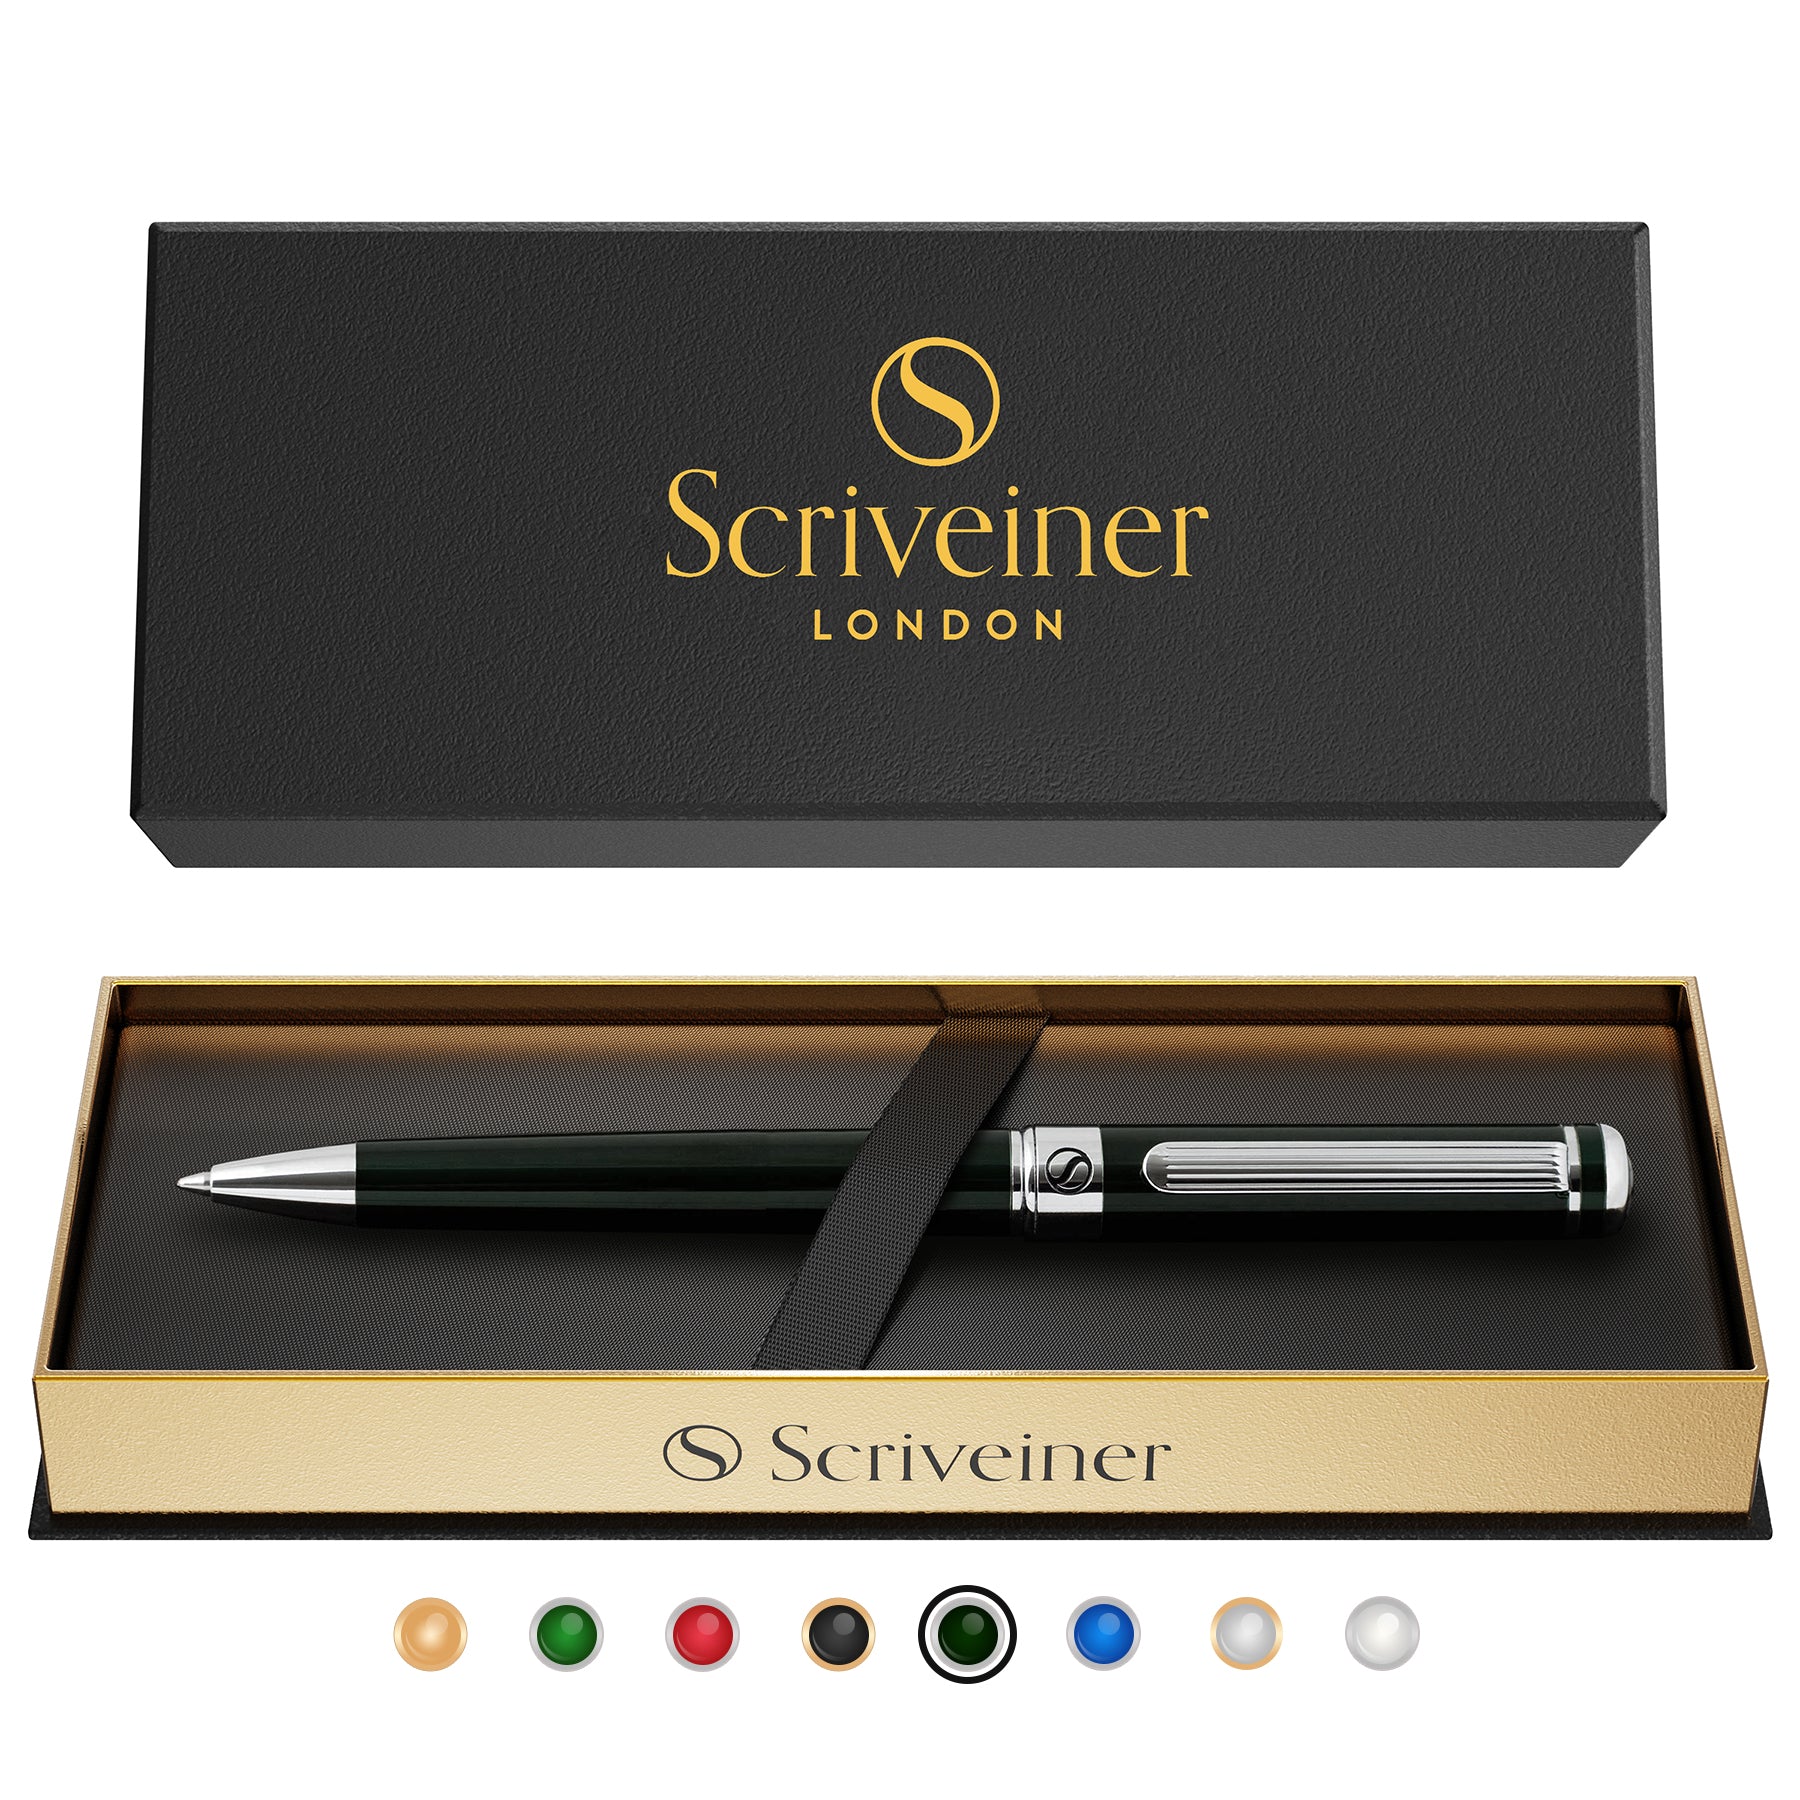 Scriveiner Black Green Ballpoint Pen - Black Green Luxury Pen, Chrome Finish